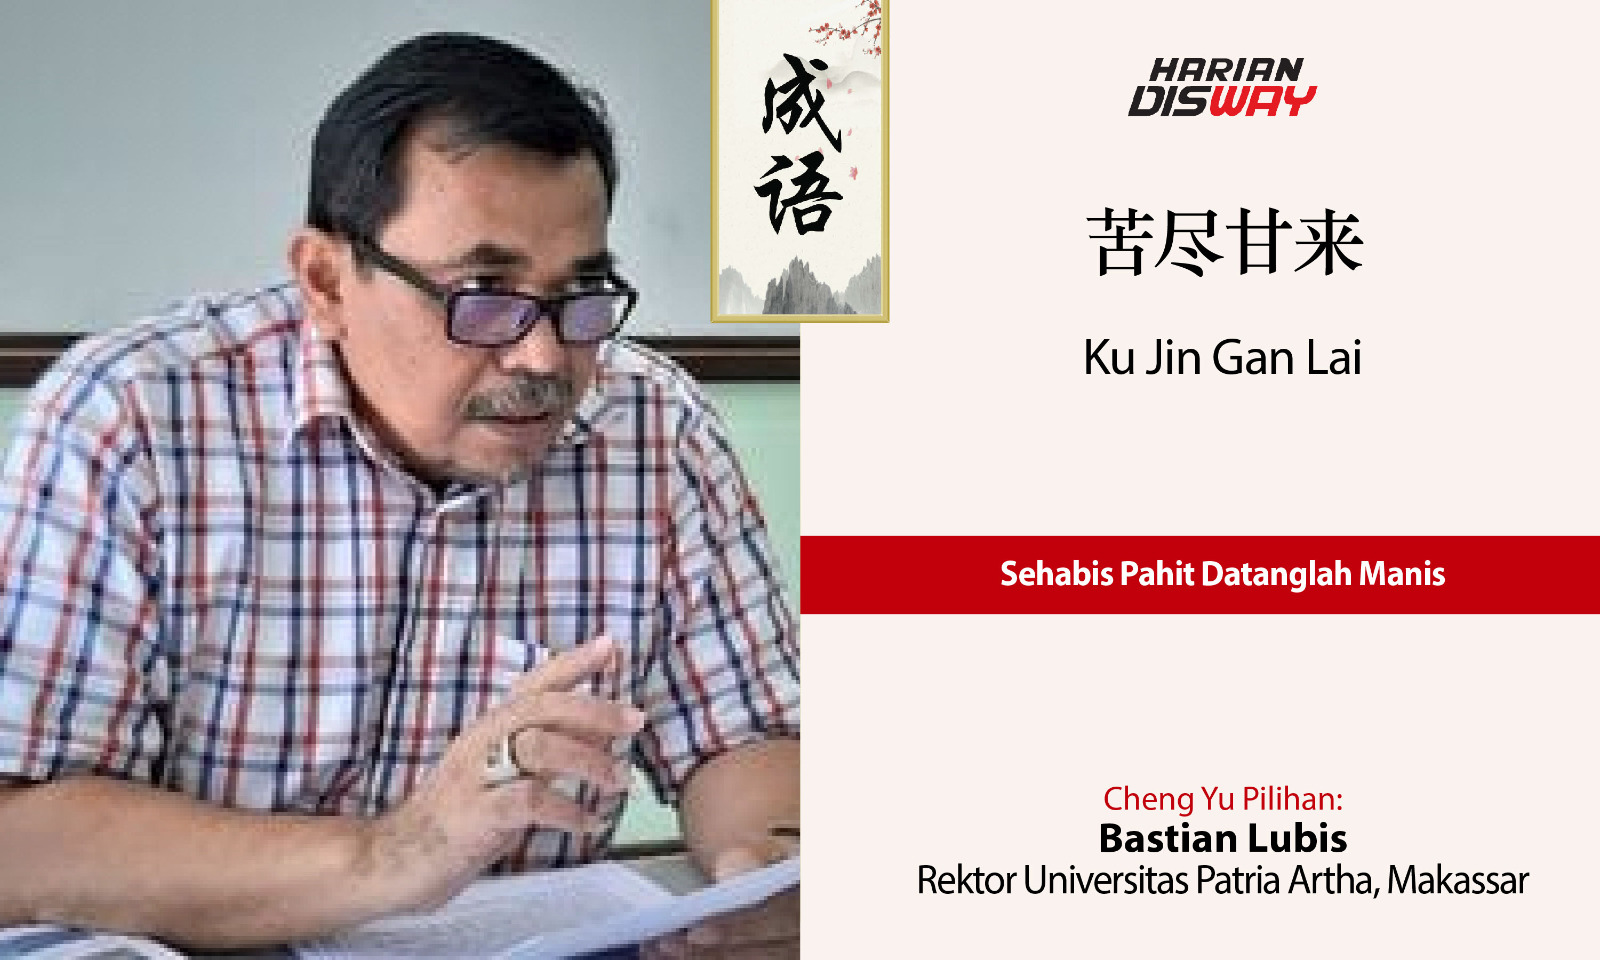 Cheng Yu Pilihan Rektor Universitas Patria Artha Makassar Bastian Lubis: Ku Jin Gan Lai